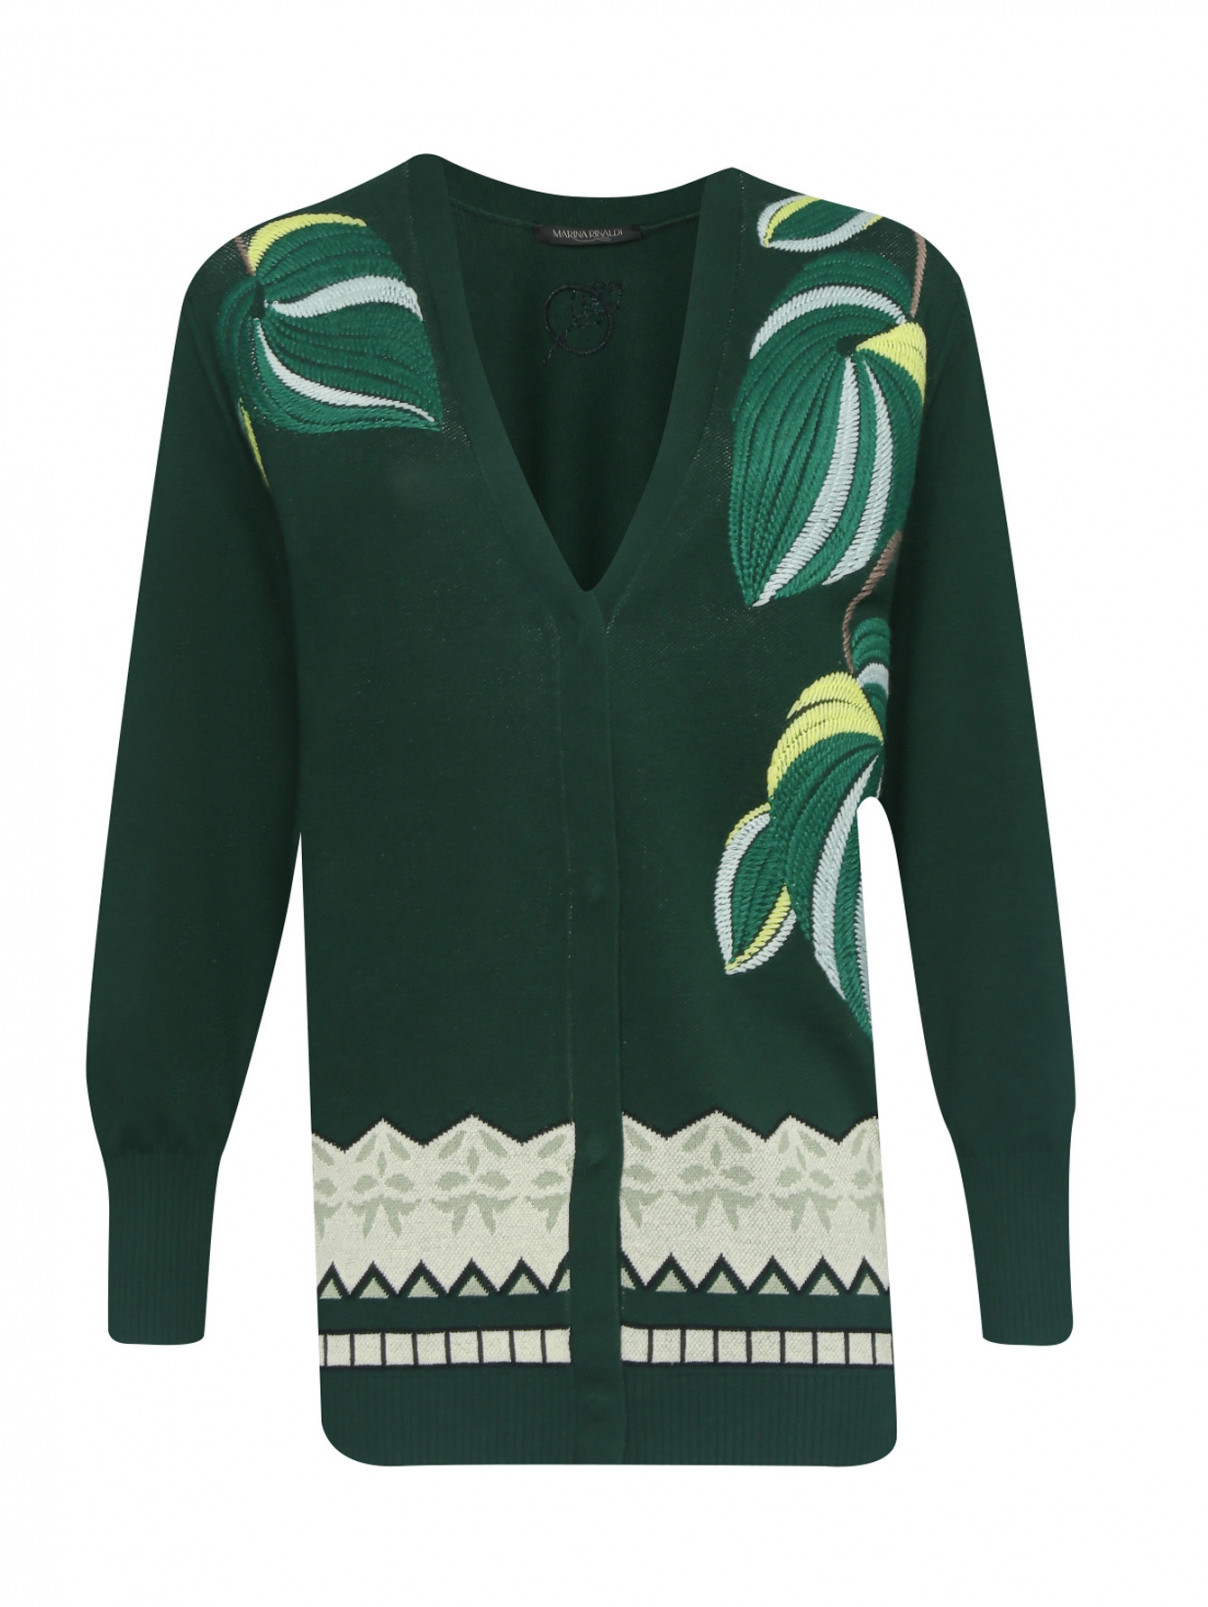 Кардиган на пуговицах с узором и вышивкой Marina Rinaldi  –  Общий вид  – Цвет:  Зеленый